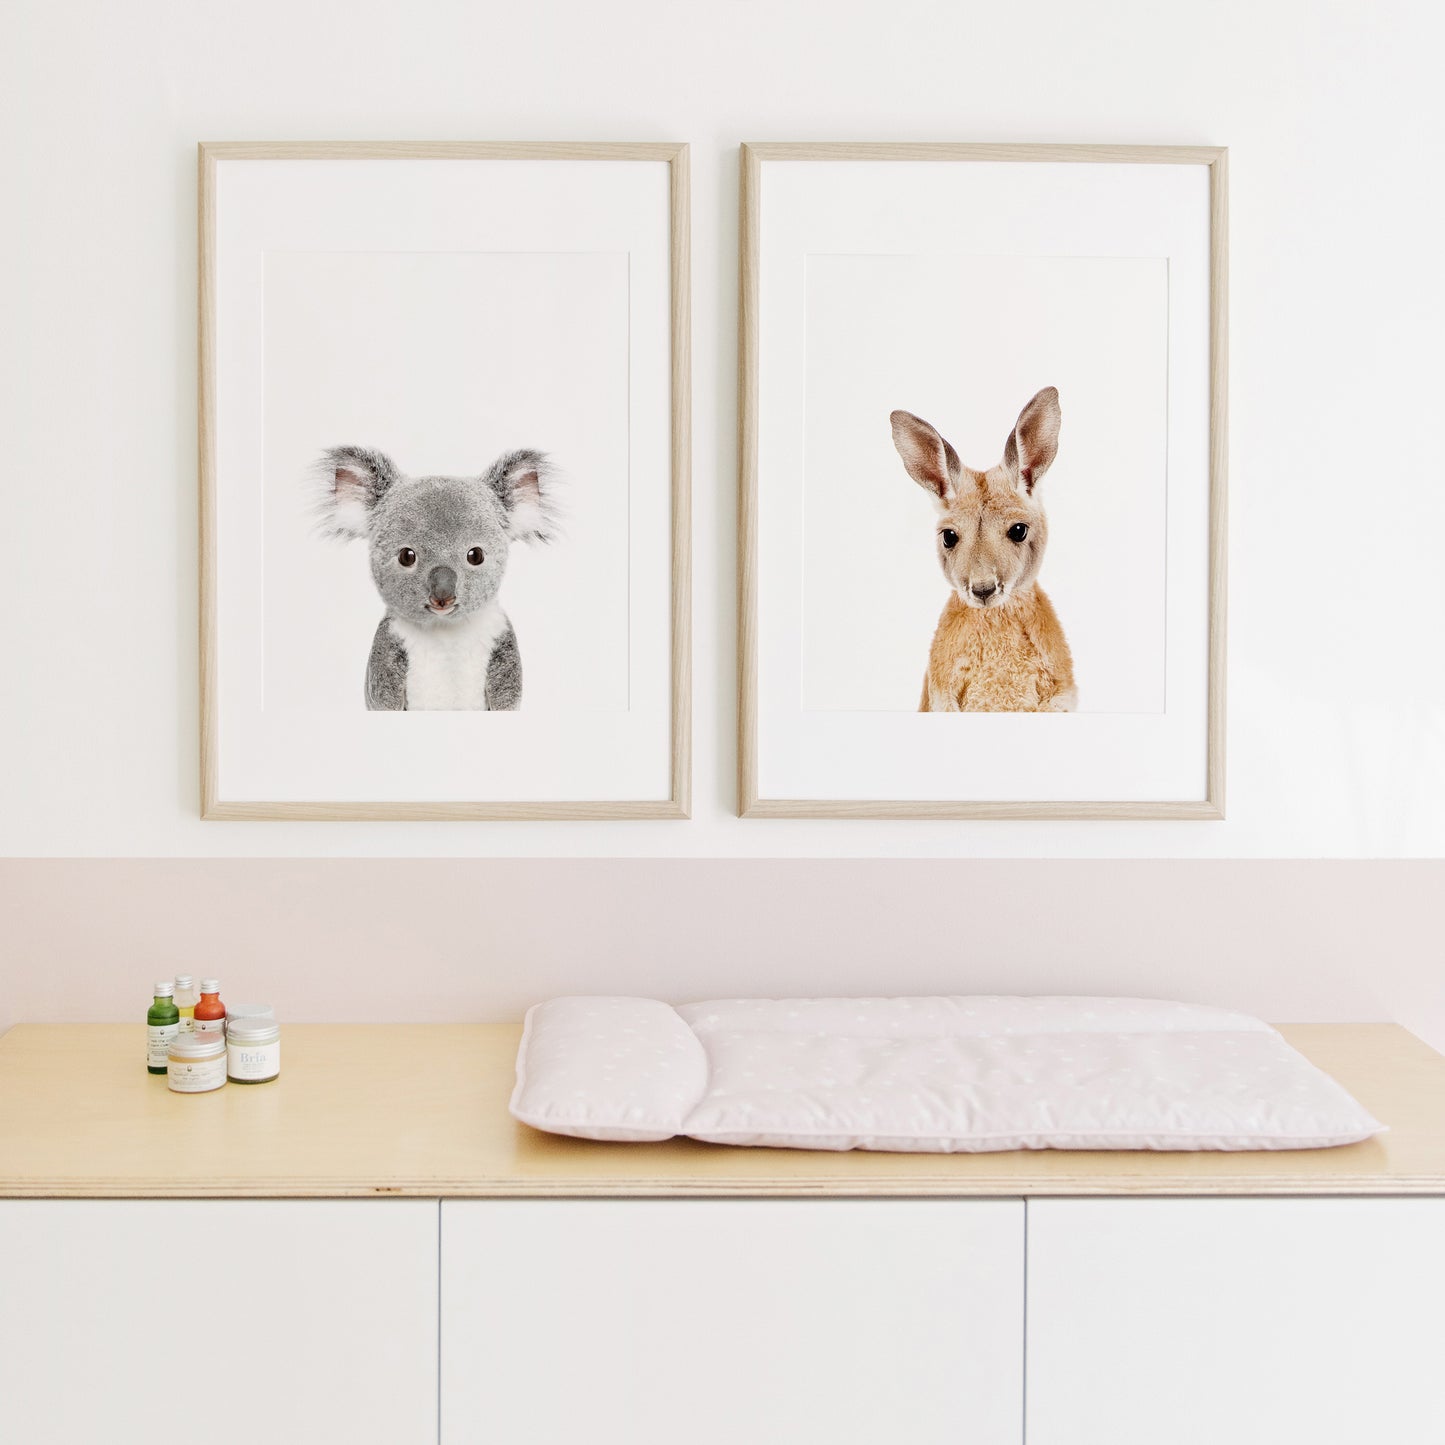 Baby Koala Wall Art Print